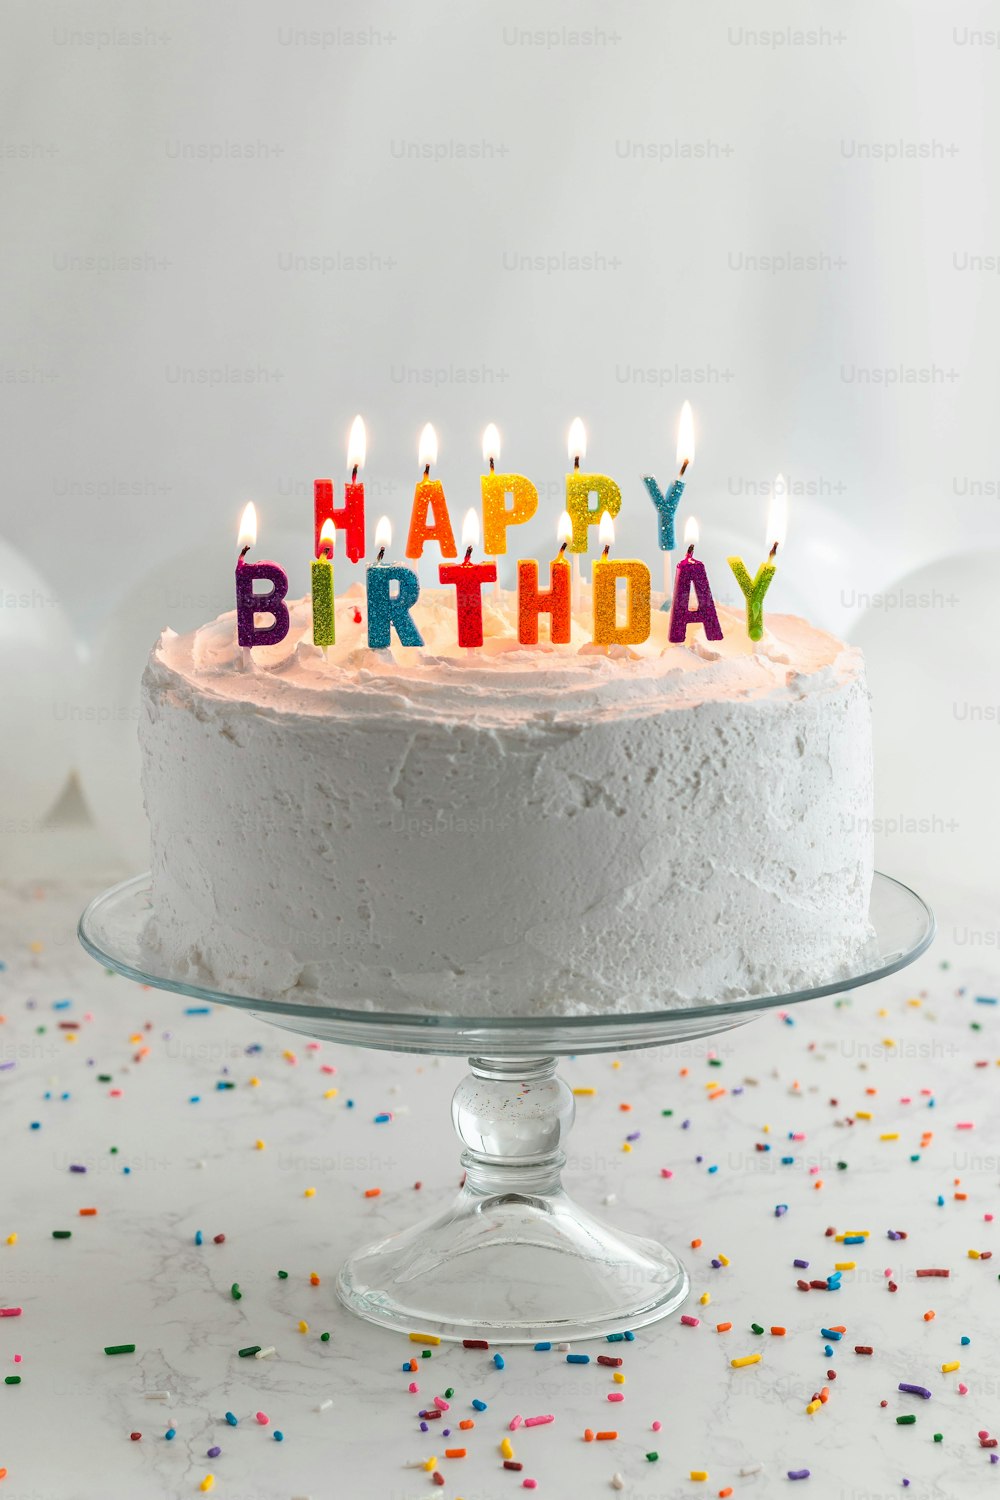 Un pastel de cumpleaños con velas encendidas sentado sobre una mesa